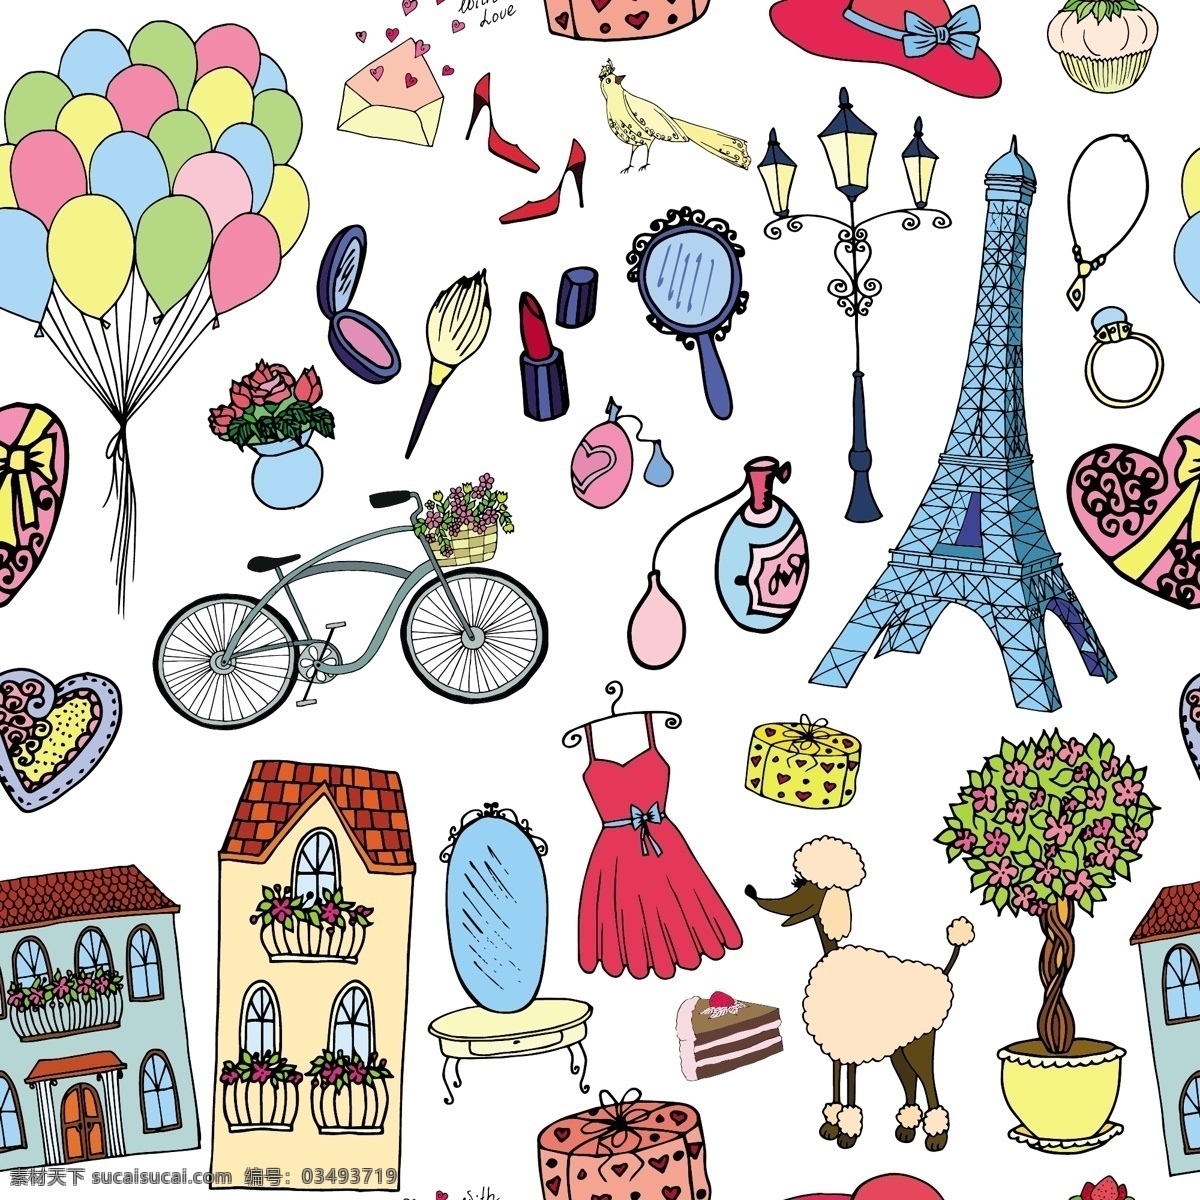 卡通 手绘 巴黎 各种 装饰 矢量 路灯 平面素材 气球 裙子 设计素材 矢量素材 铁塔